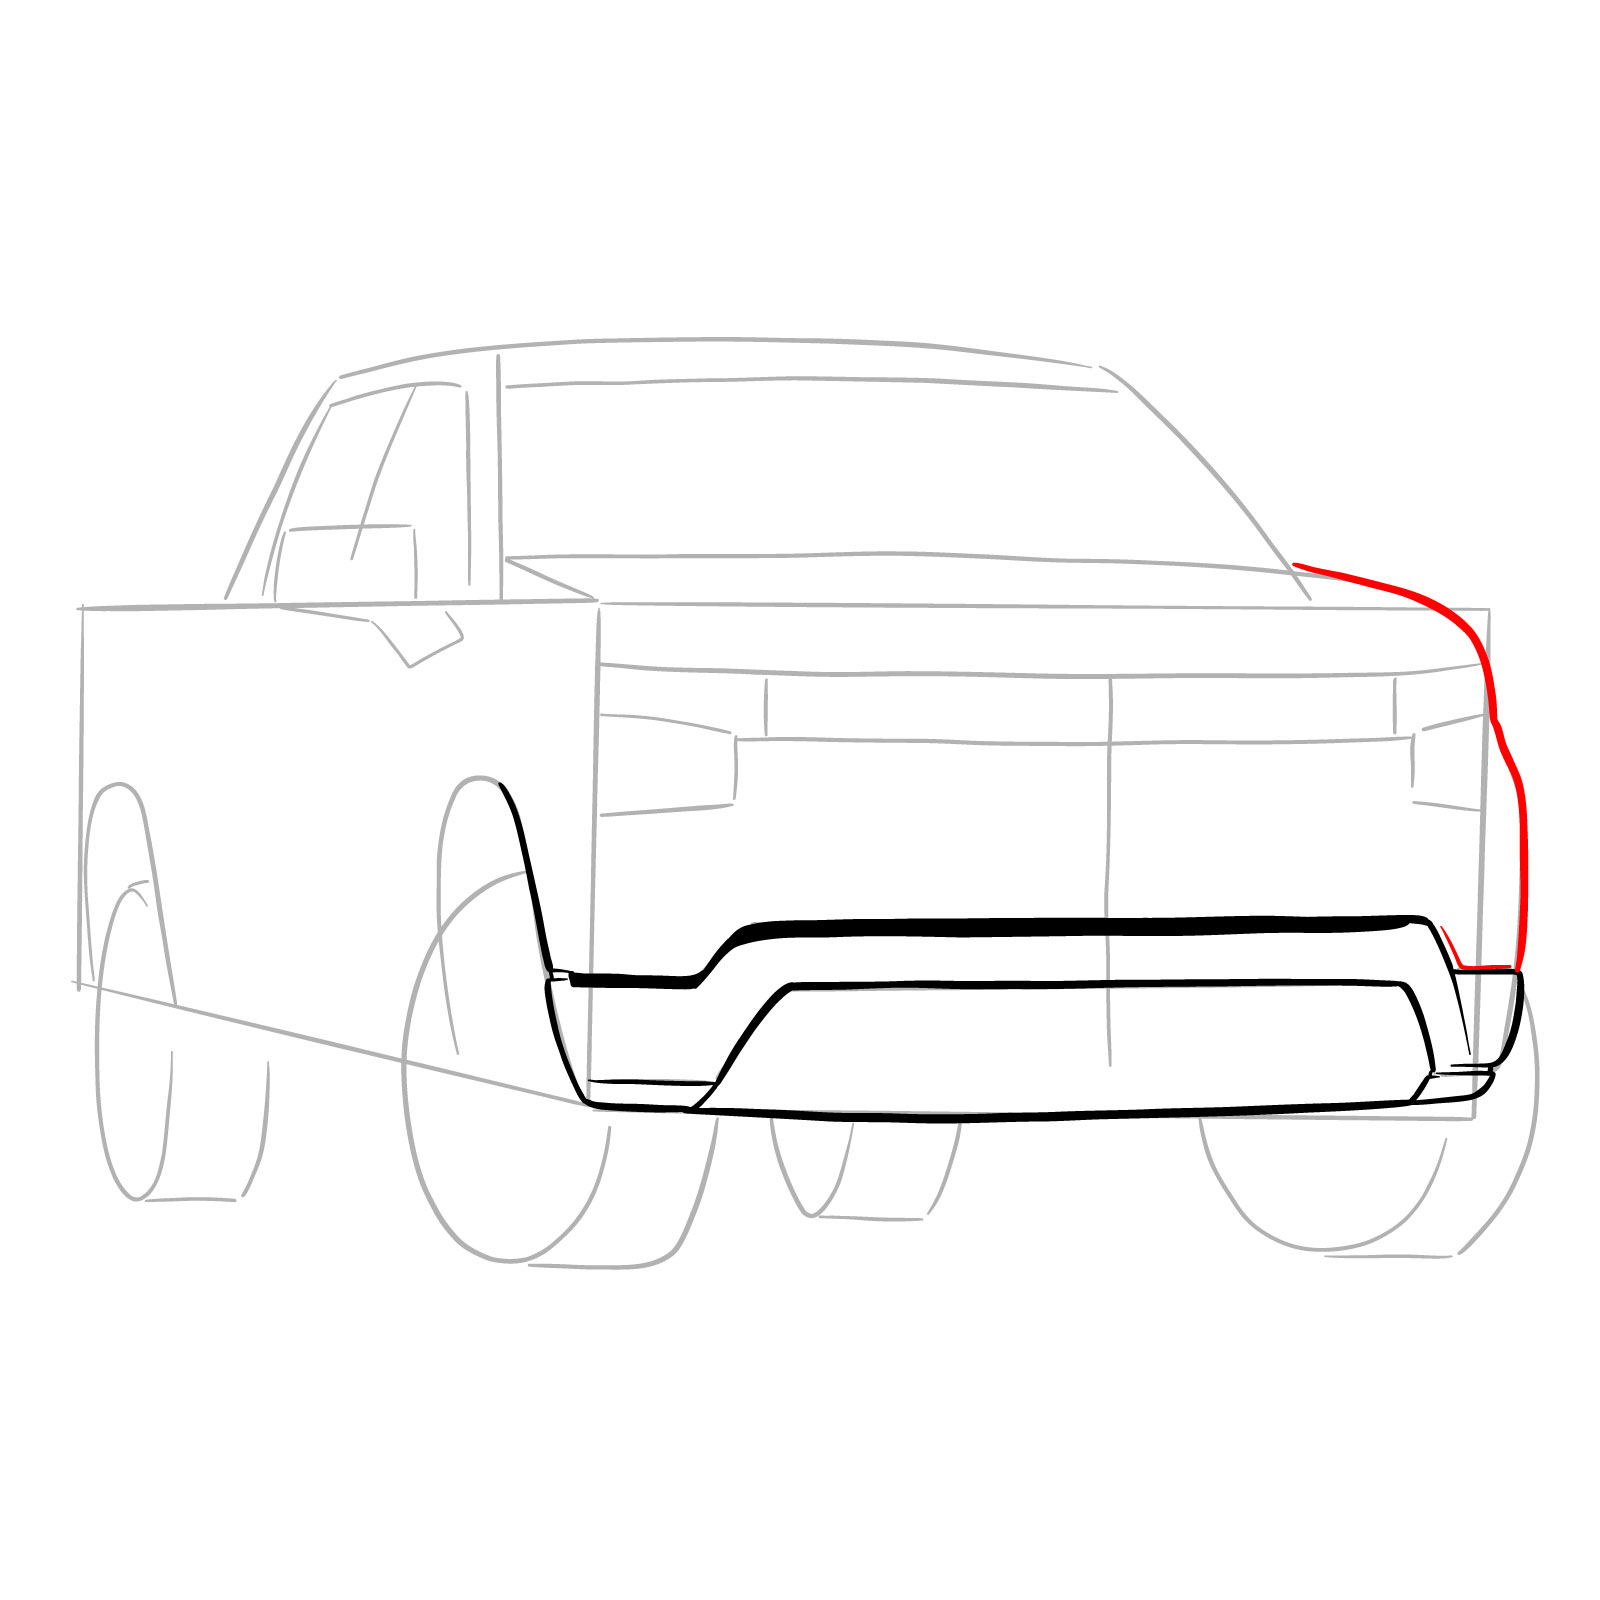 How to draw a 2022 Chevy Silverado - step 08